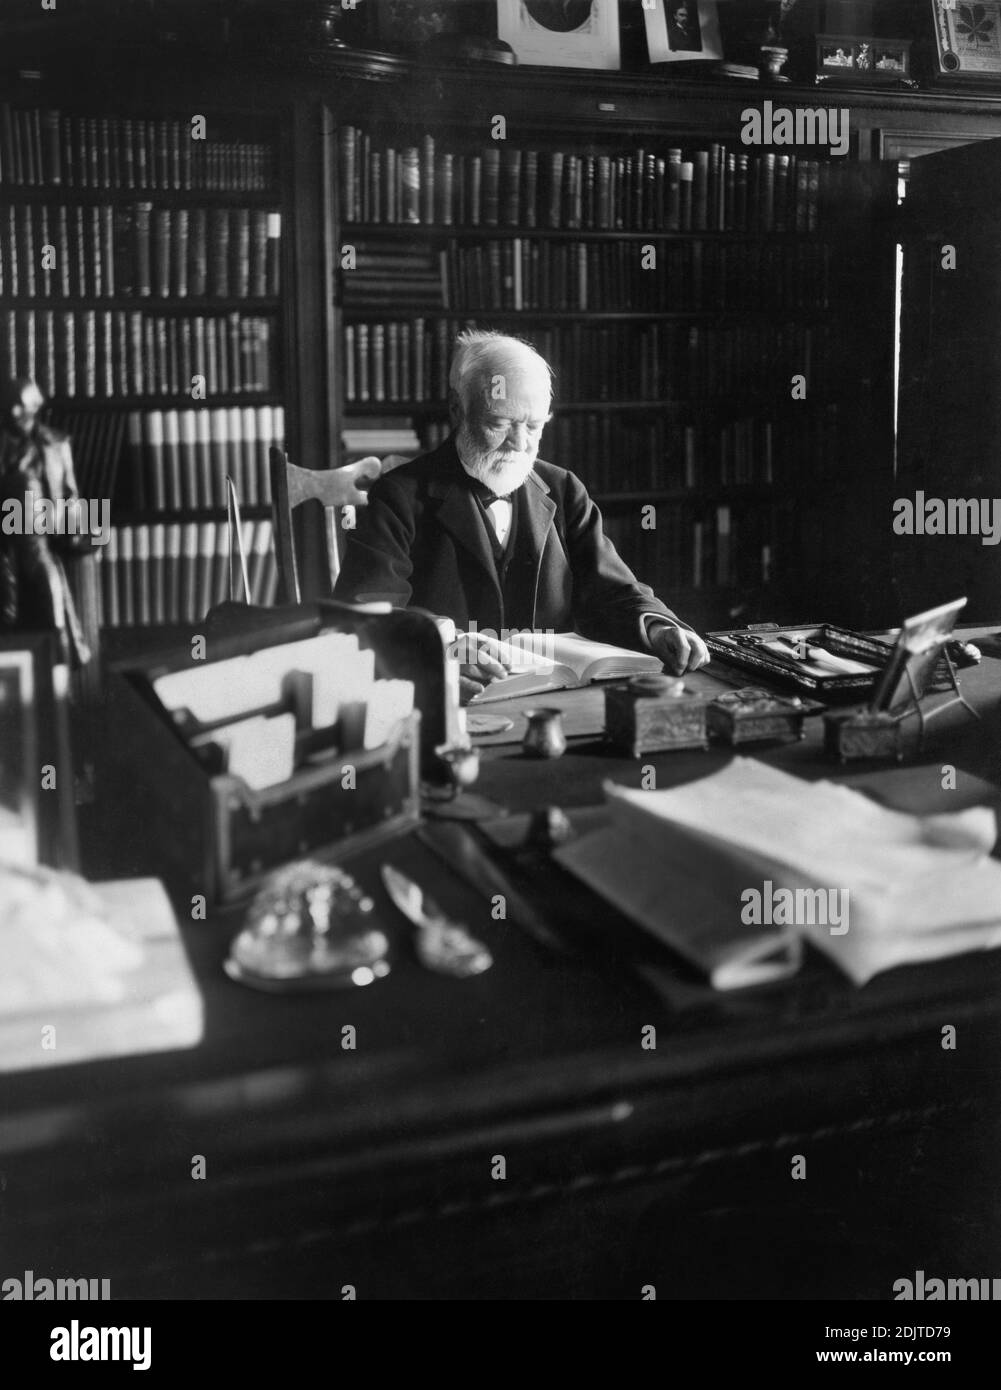 Andrew Carnegie (1835-1919) schottisch-amerikanischer Industrialist und Philanthropist, Portrait Sitting at Desk, New York City, New York, USA, Foto von Marceau, 1913 Stockfoto